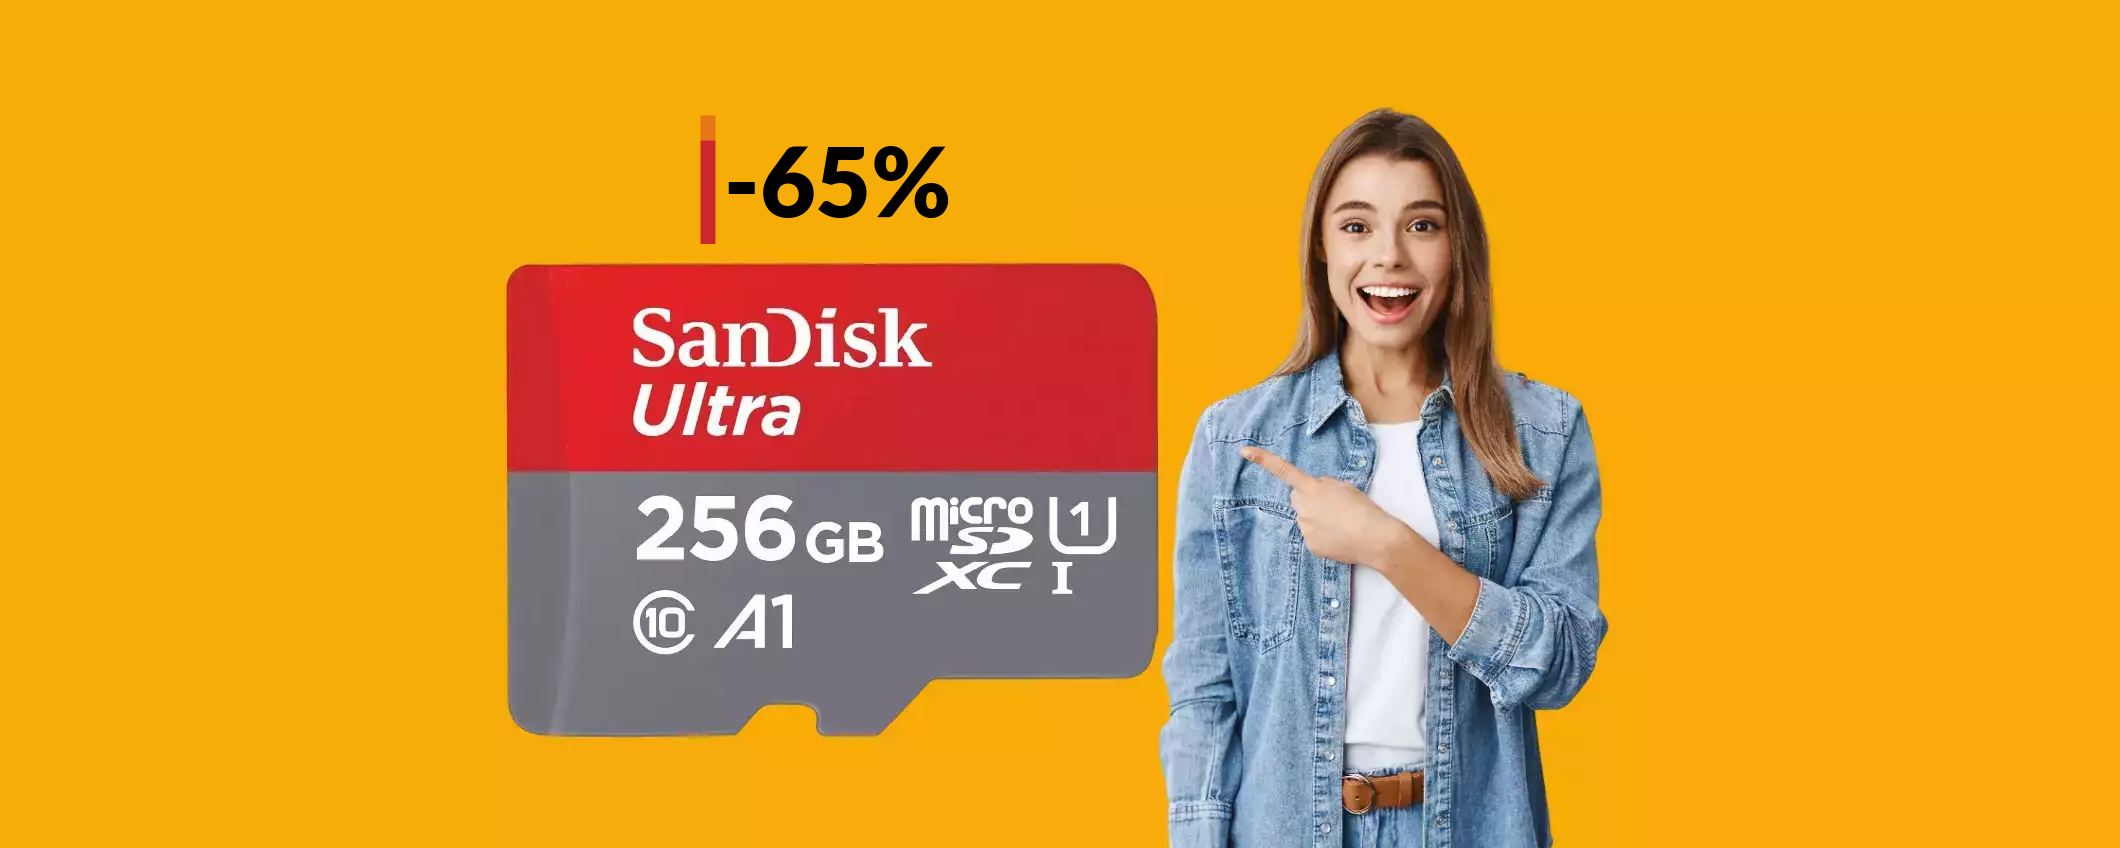 MicroSD SanDisk 256GB a prezzo DISINTEGRATO: tua con 22€